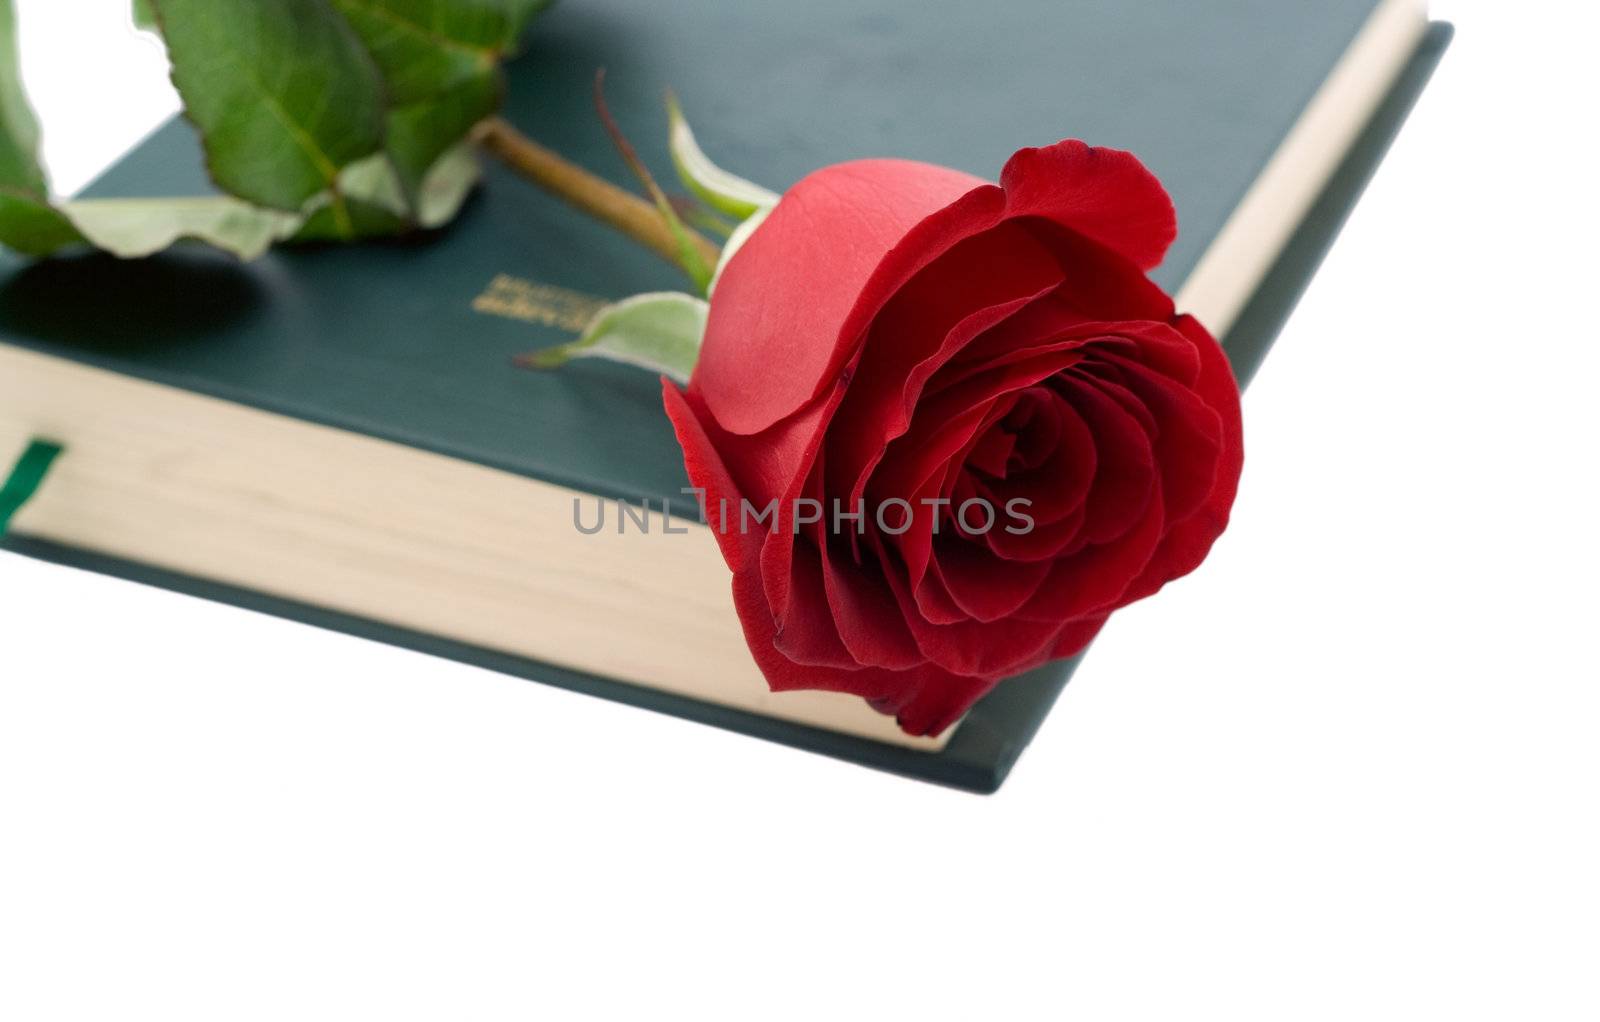 Red rose in a book by Irina1977